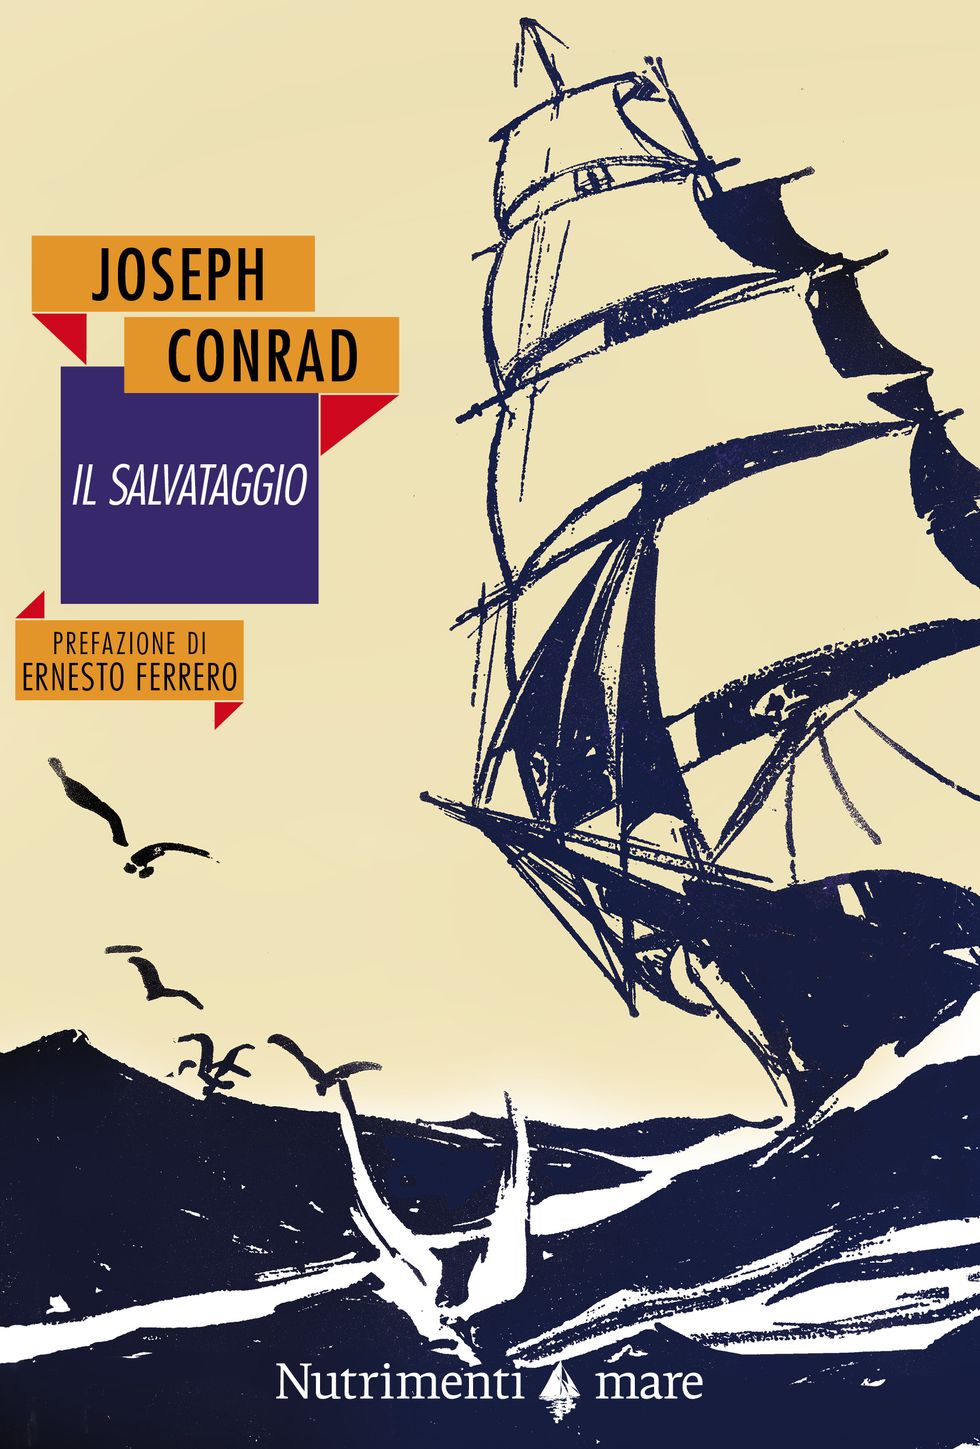 Joseph Conrad, Il salvataggio